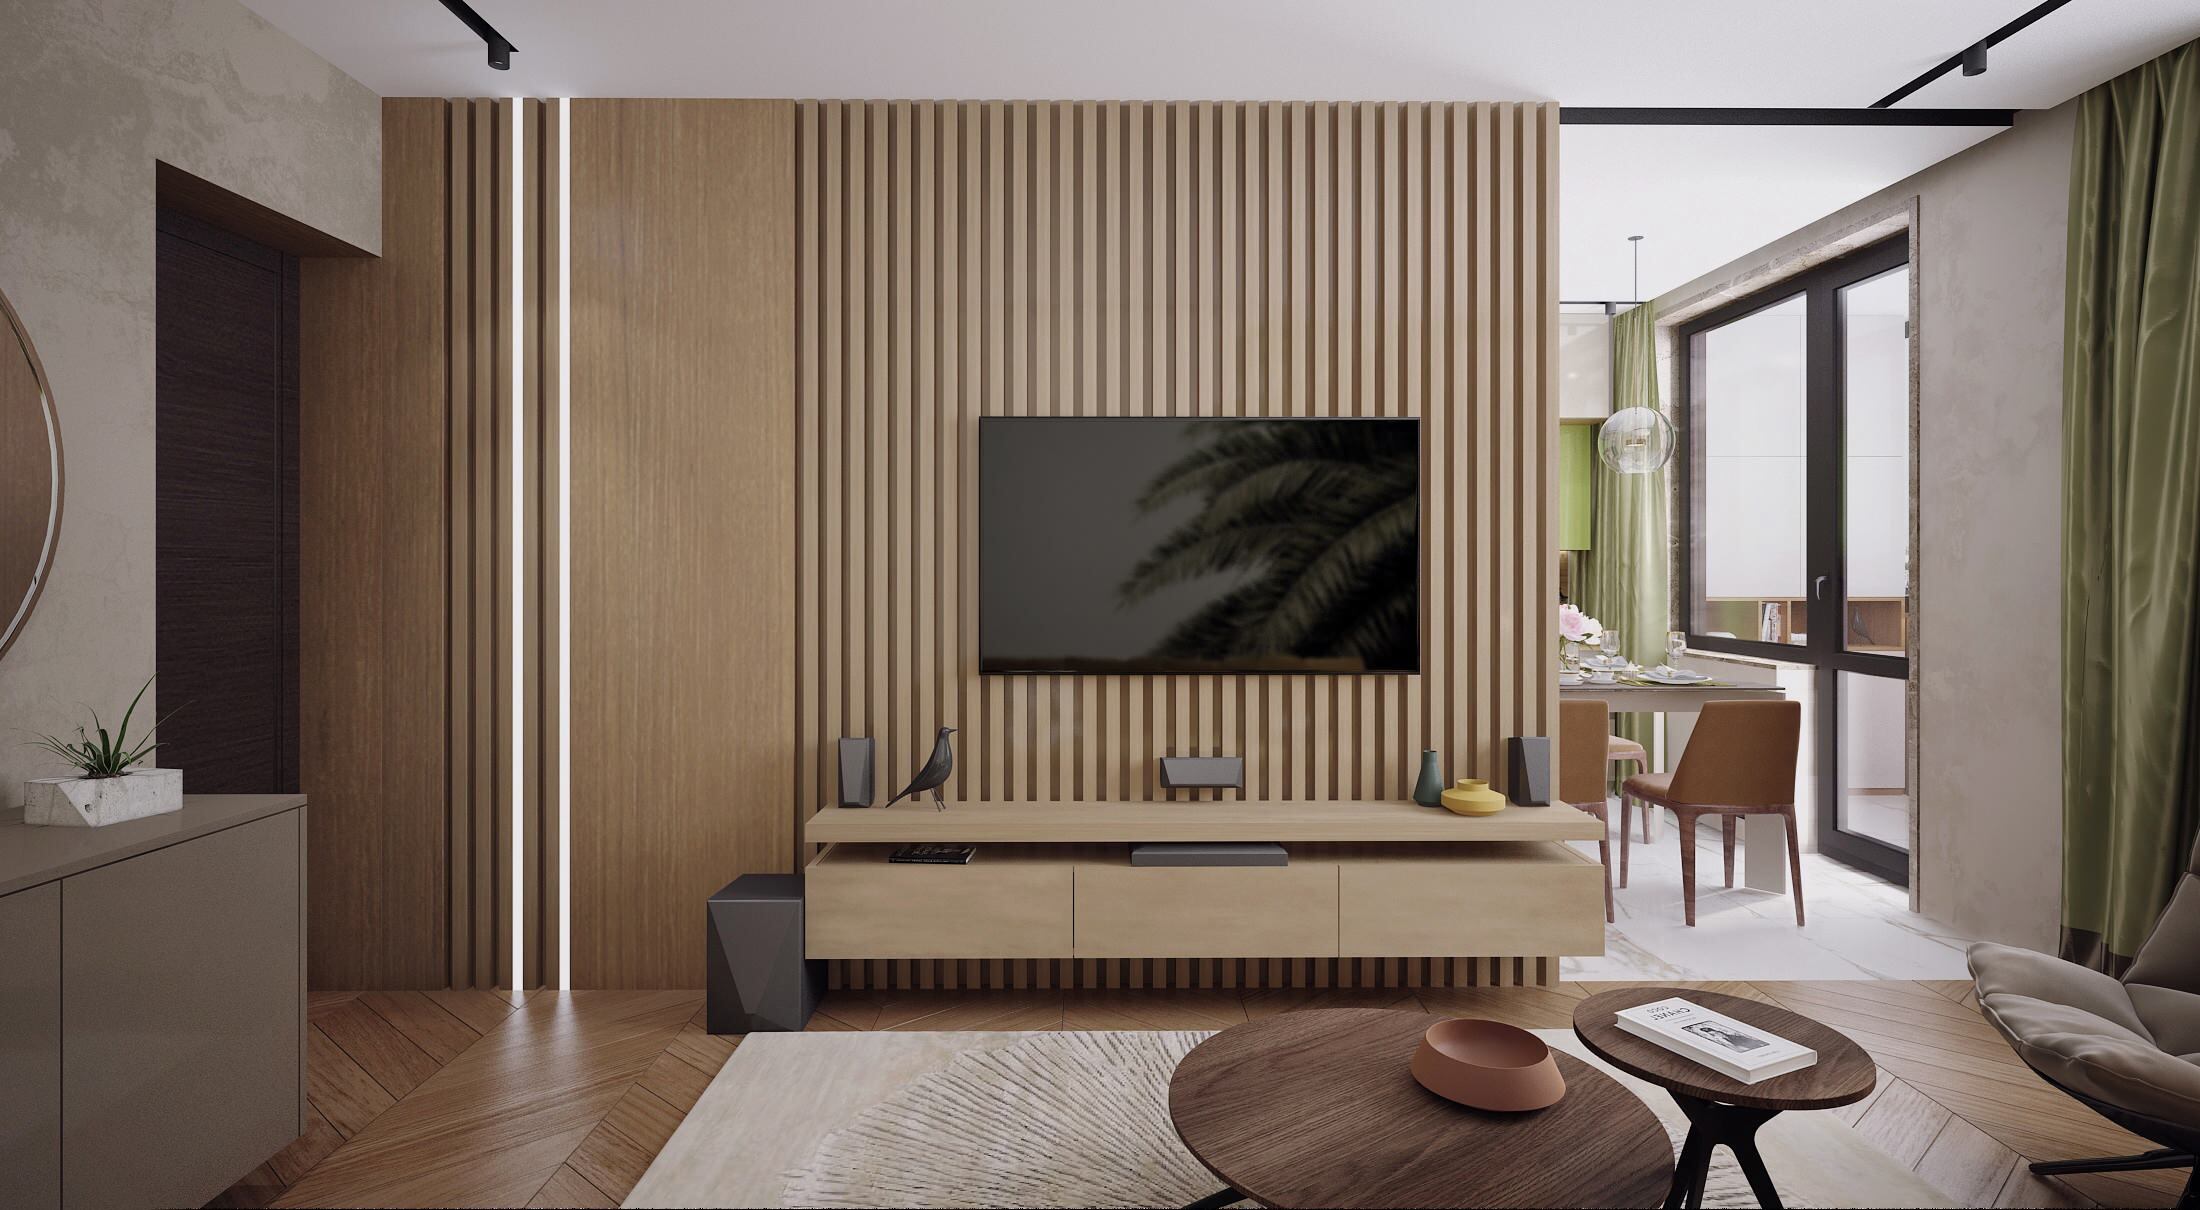 Интерьер гостиной cтеной с телевизором, телевизором на рейках, керамогранитом на стену с телевизором, вертикальными жалюзи и рейками с подсветкой